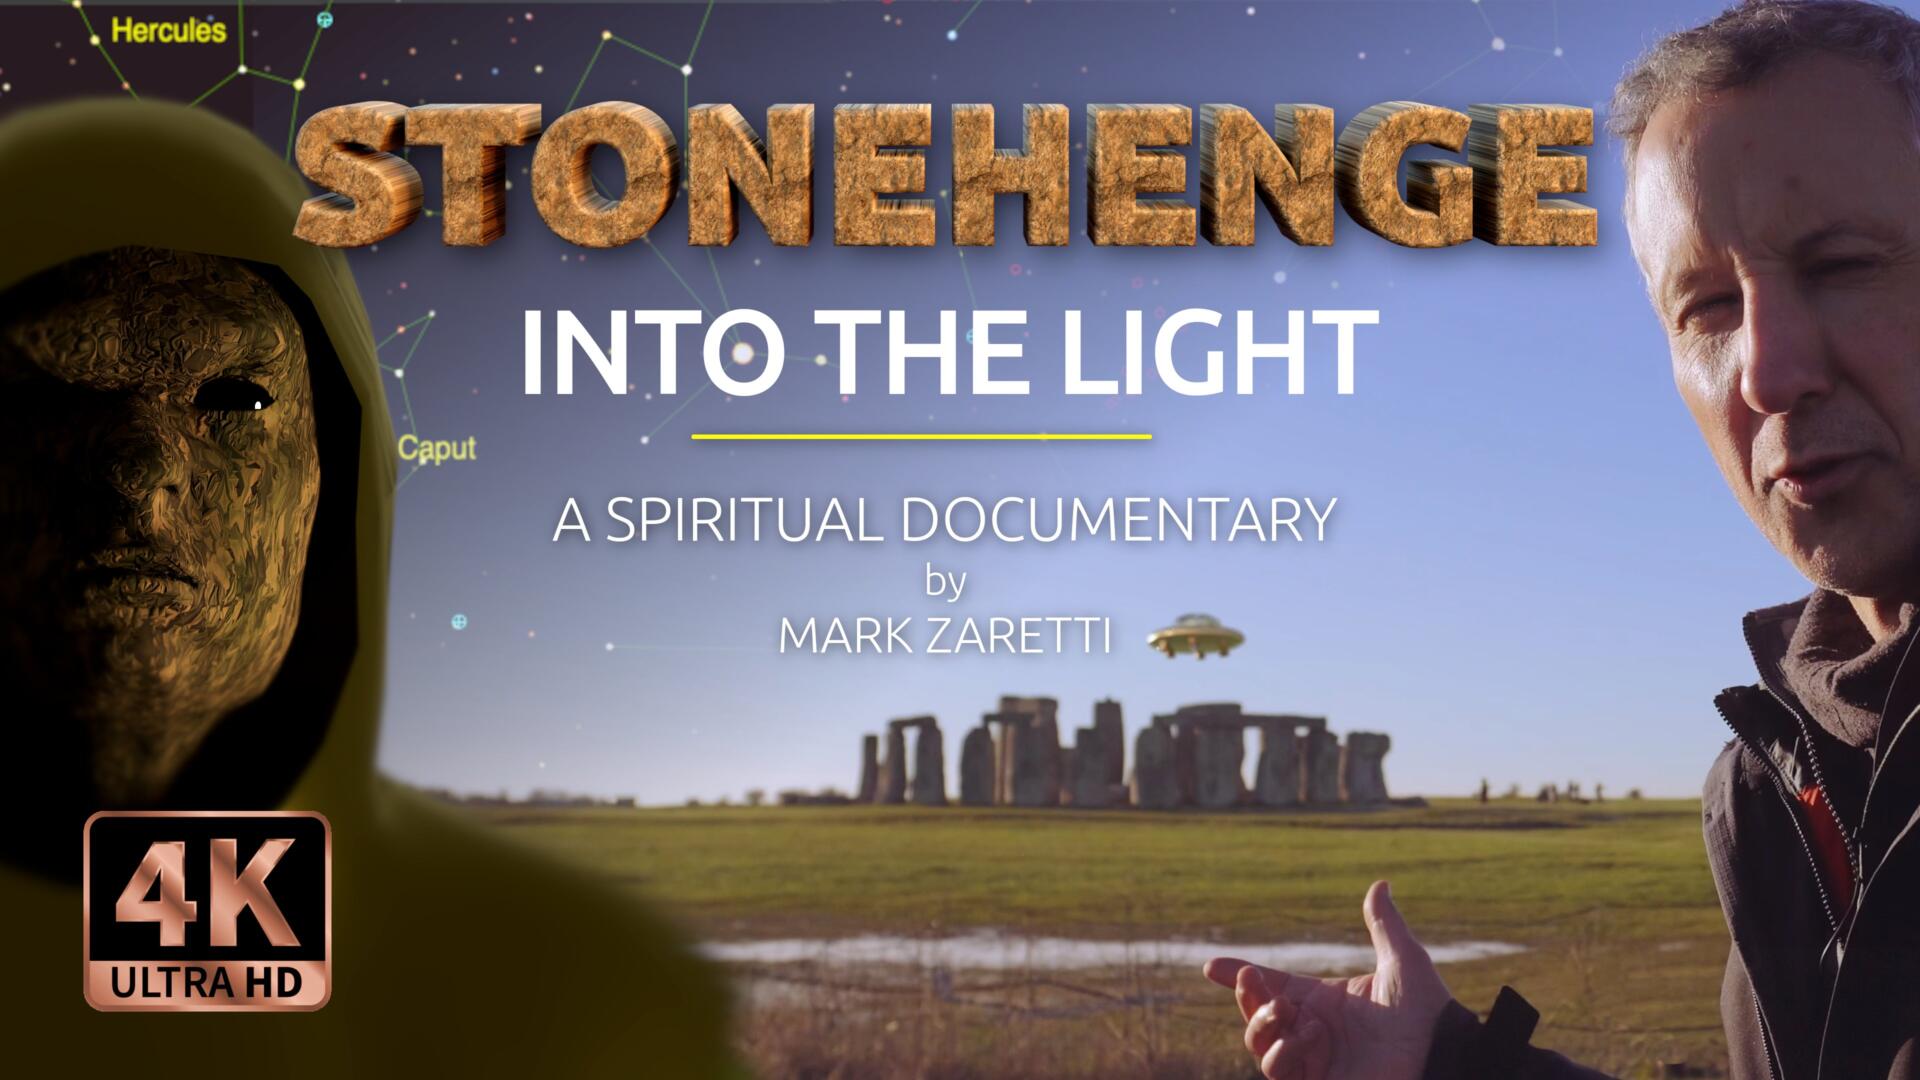 Stonehenge documentary